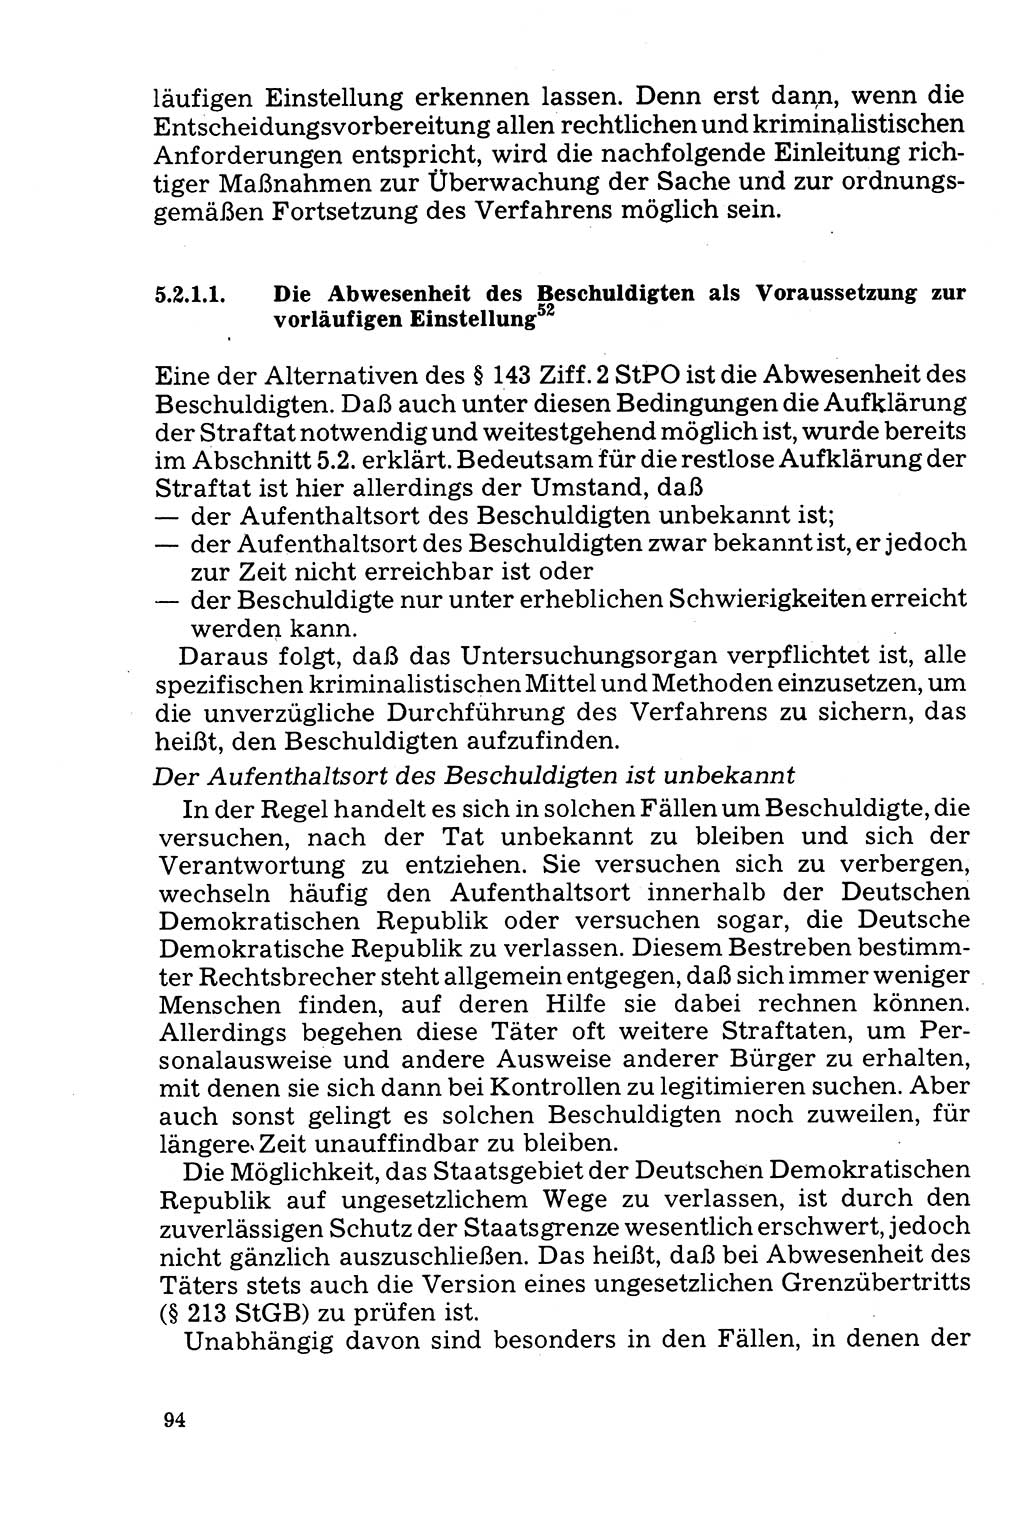 Der Abschluß des Ermittlungsverfahrens [Deutsche Demokratische Republik (DDR)] 1978, Seite 94 (Abschl. EV DDR 1978, S. 94)